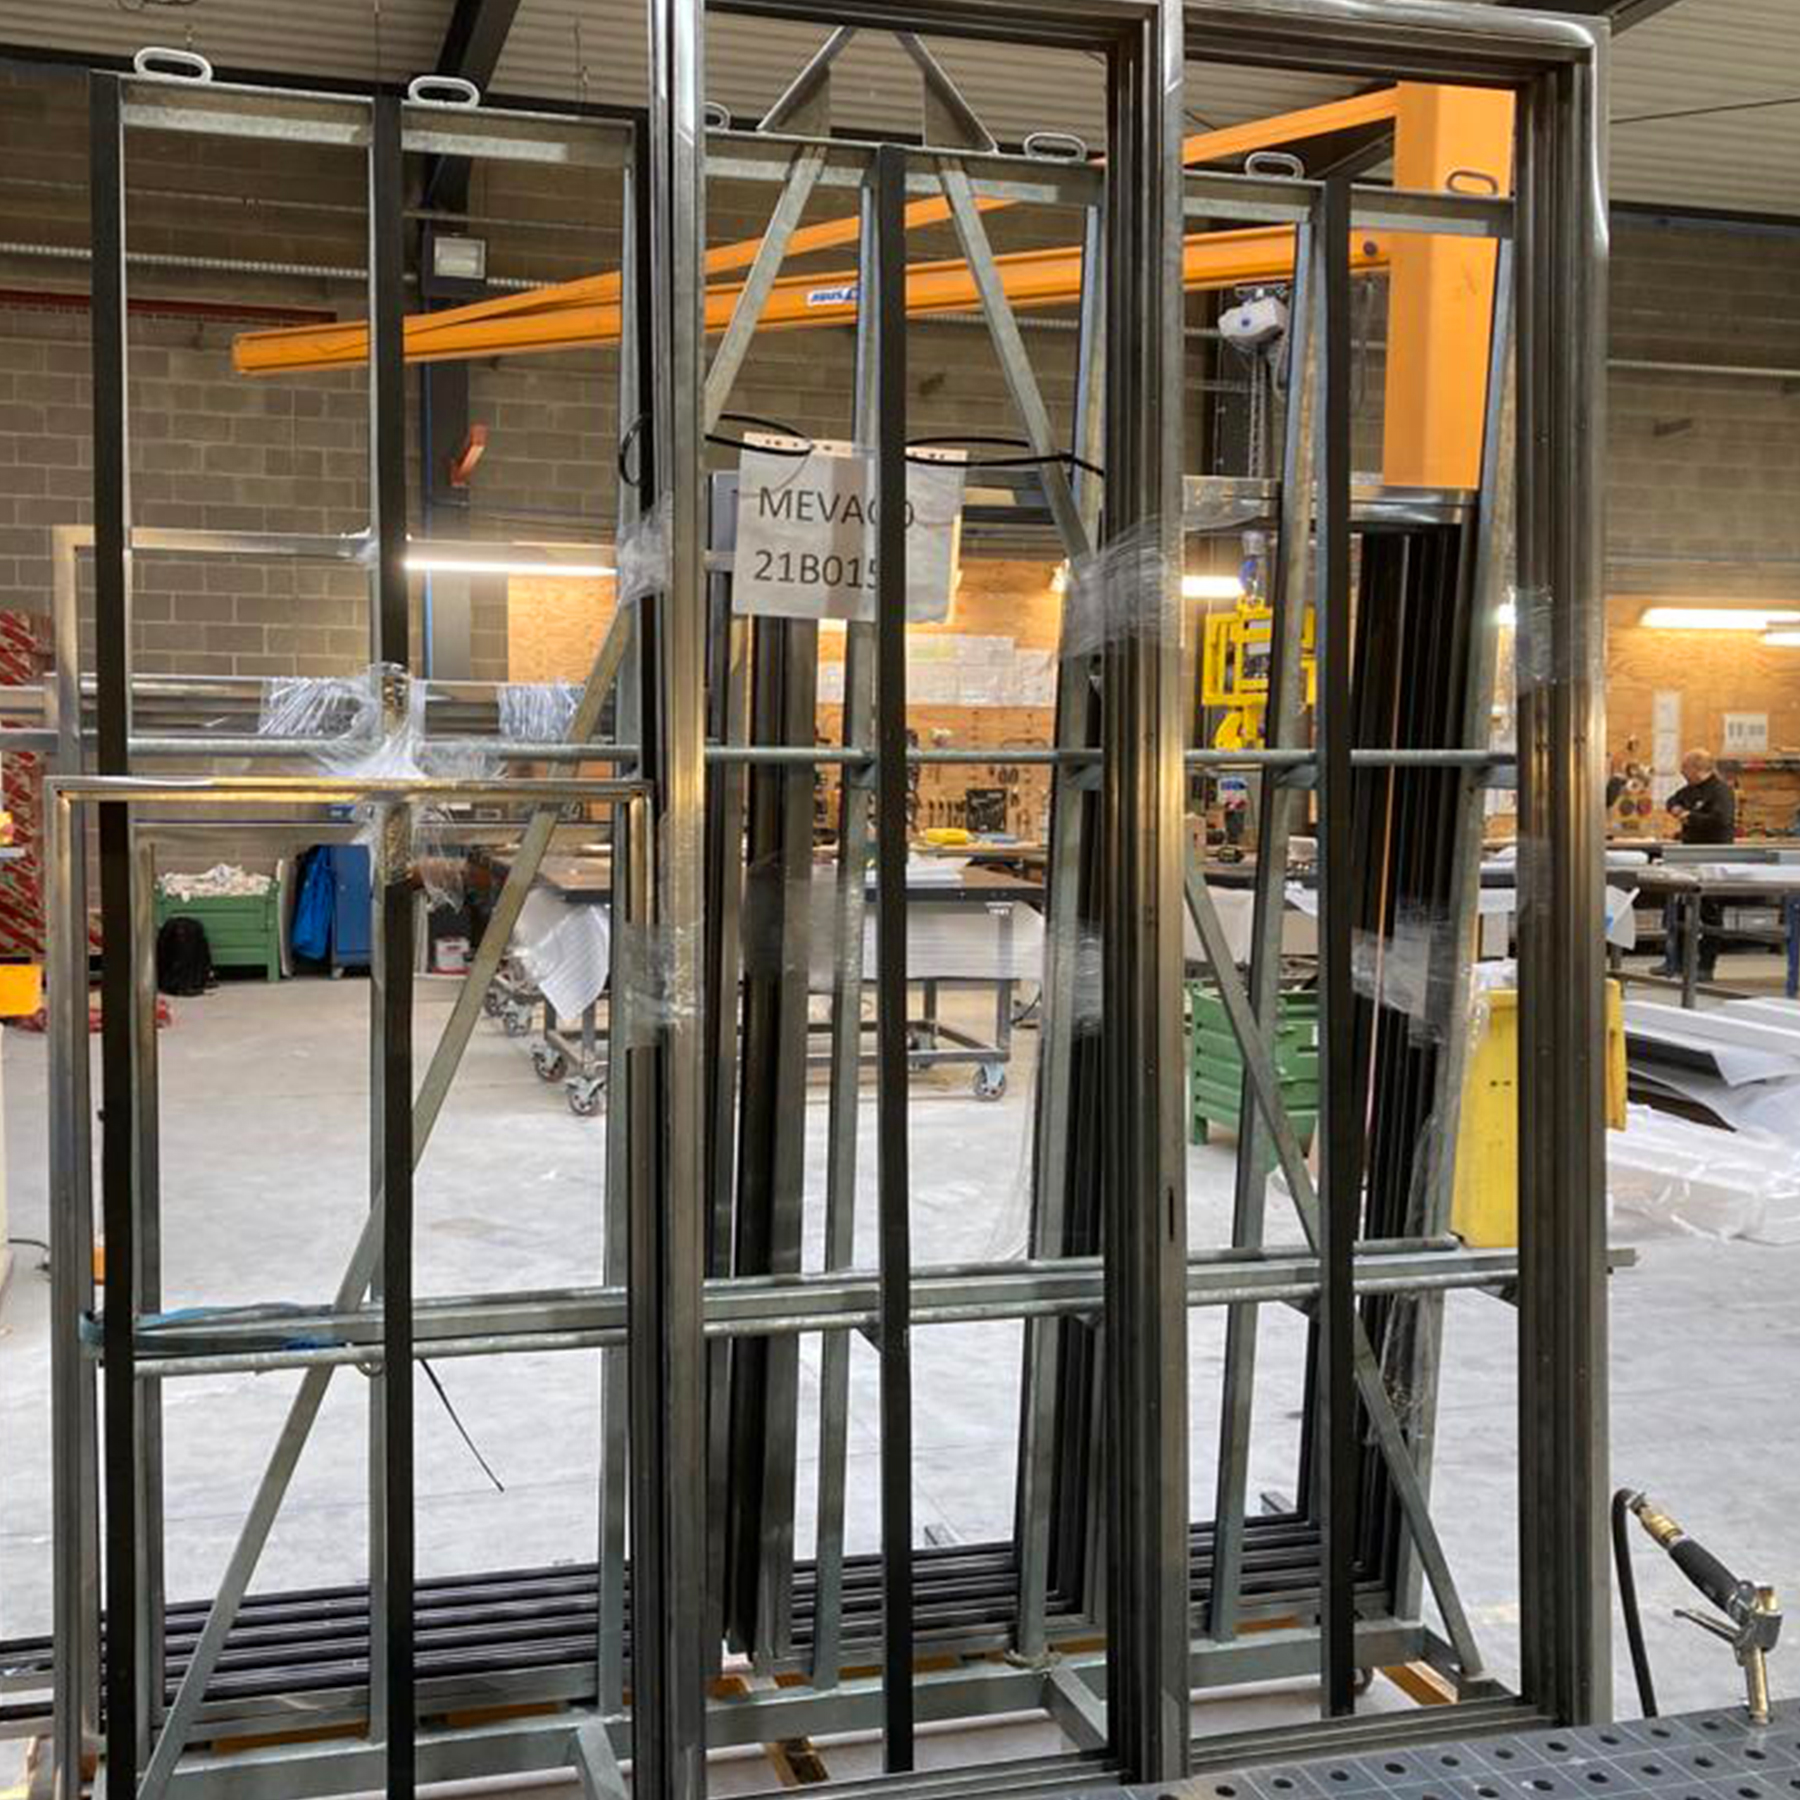 De metalen raamgehelen staan klaar op bokken voor de volgende stap in het productieproces.